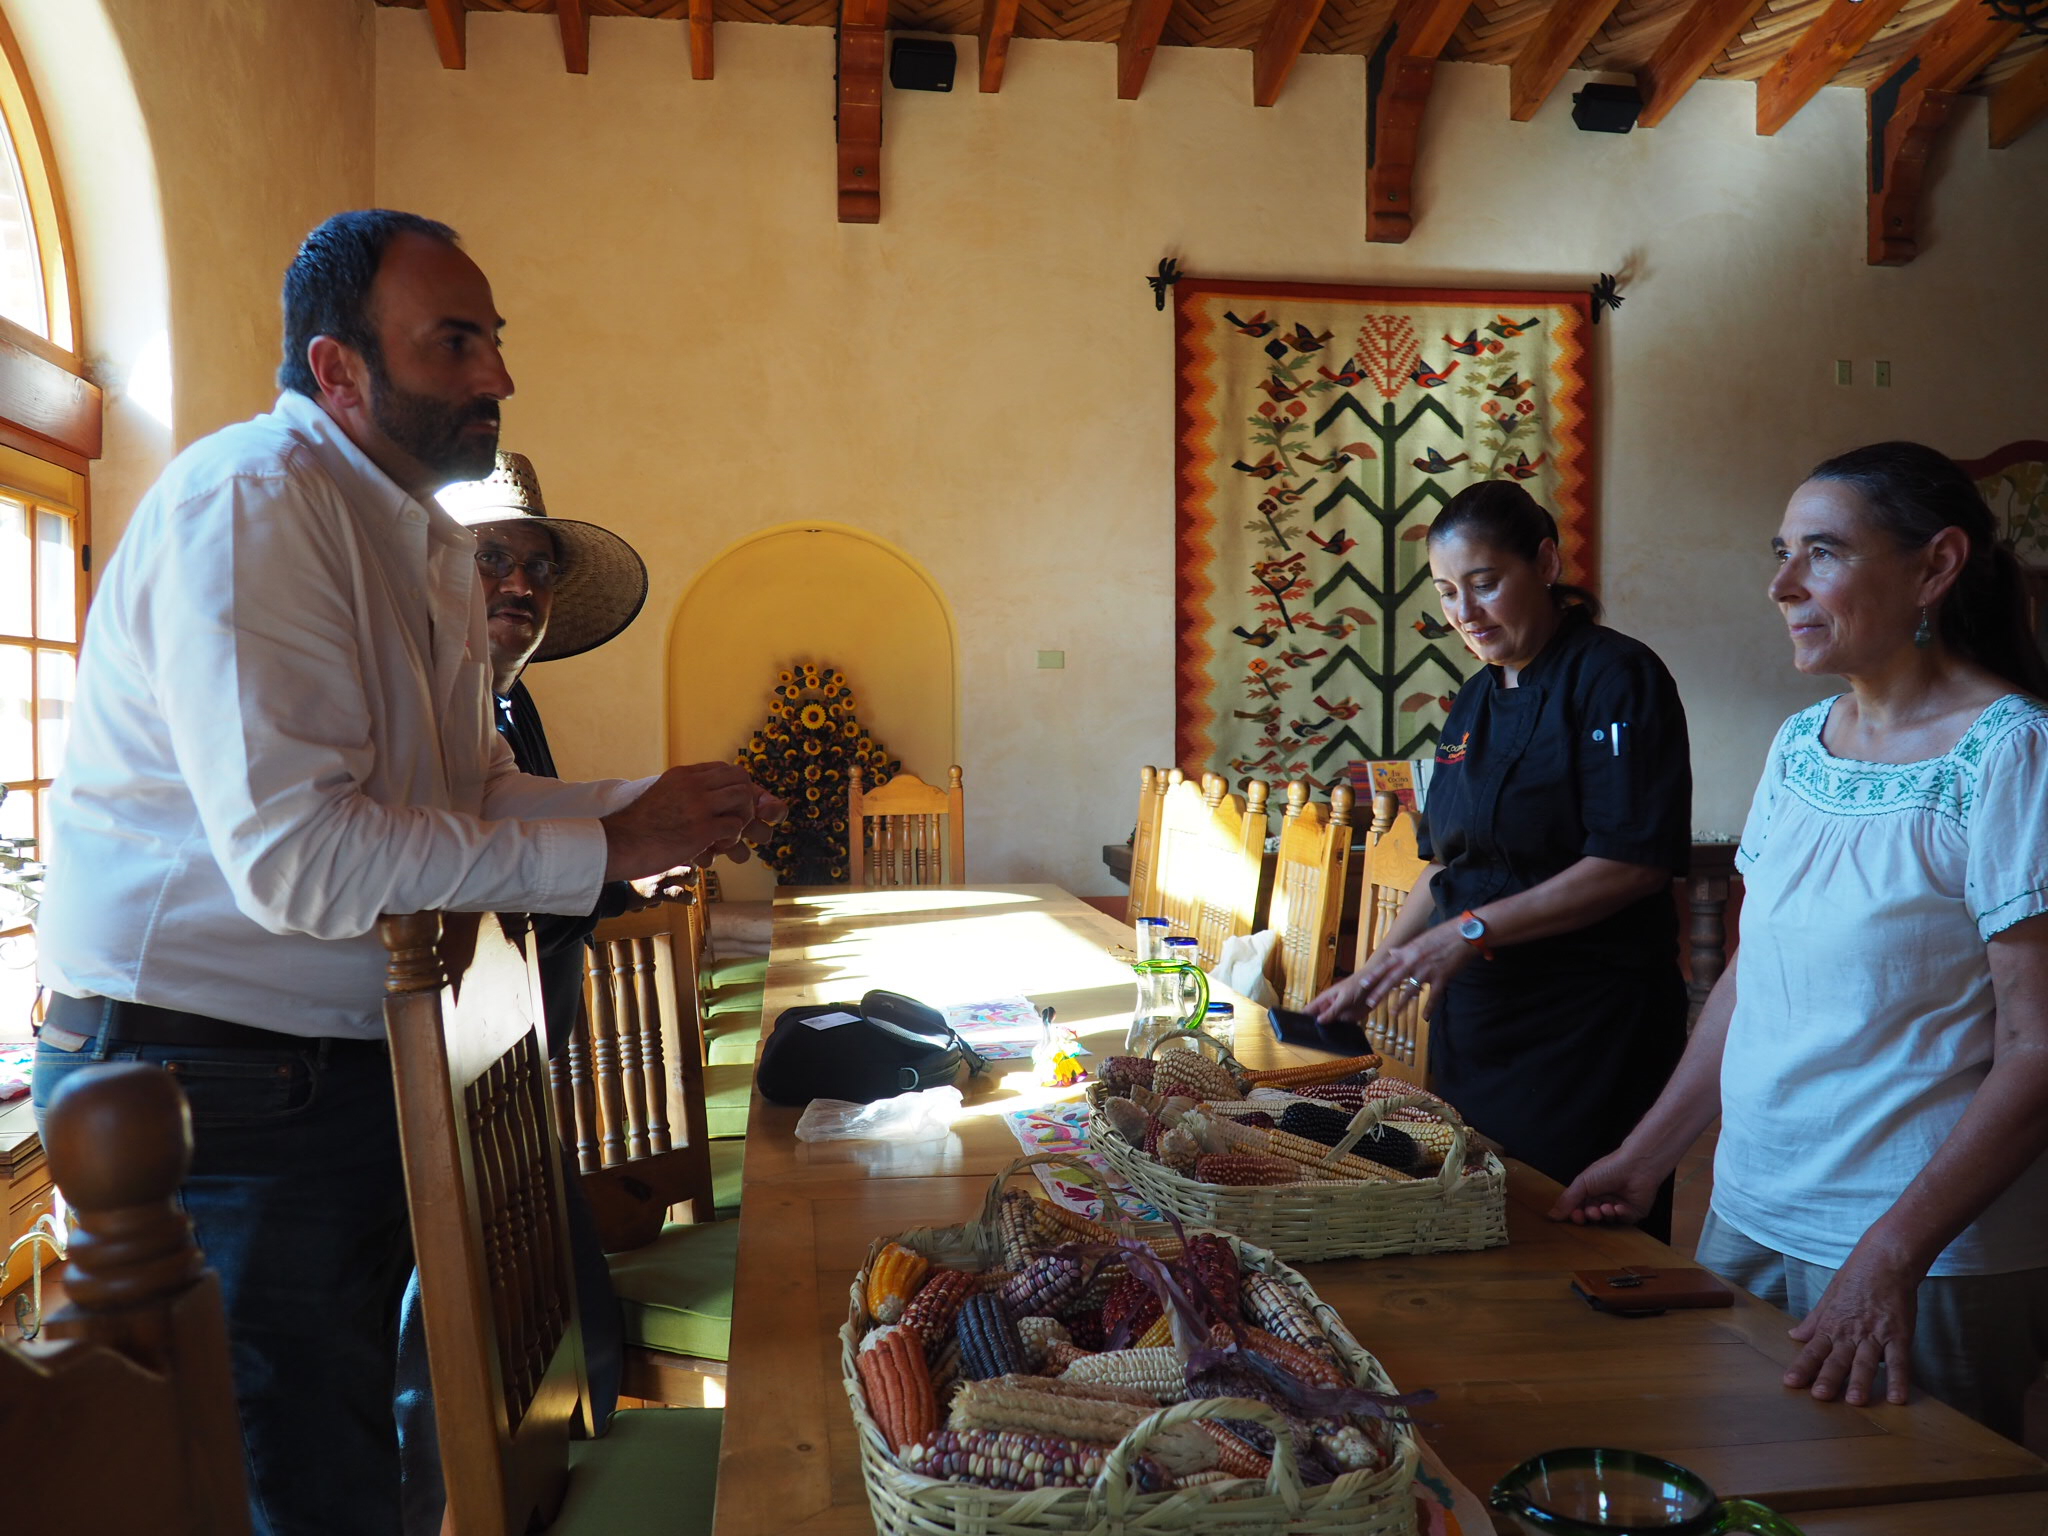 Cocina and Puerta Bryant Tecate, Mexico Jackie — Rancho La La Canta: Que